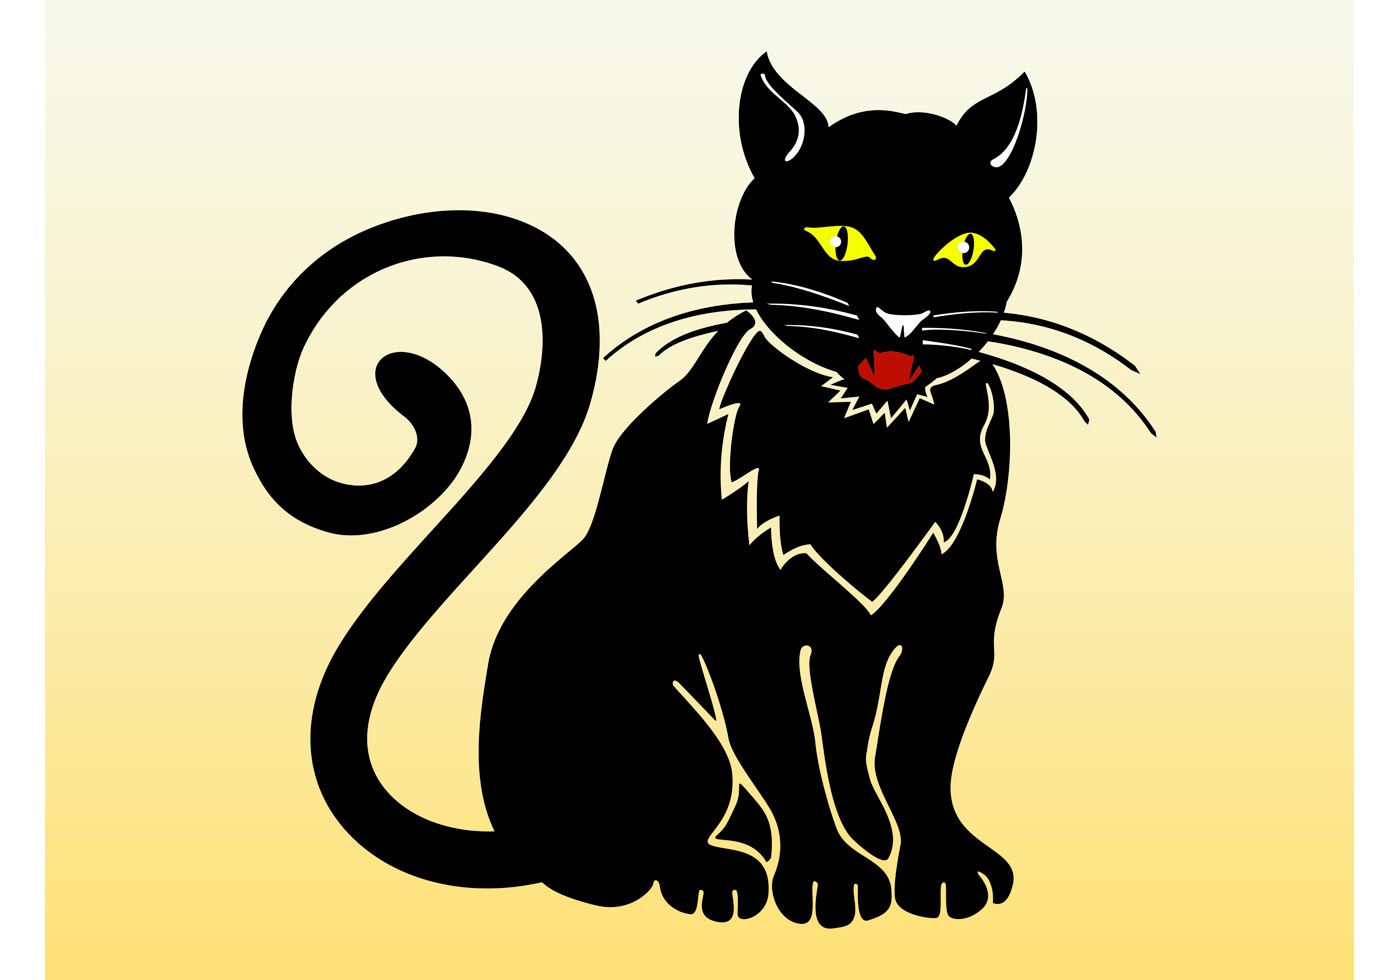 Нарисованный черный кот